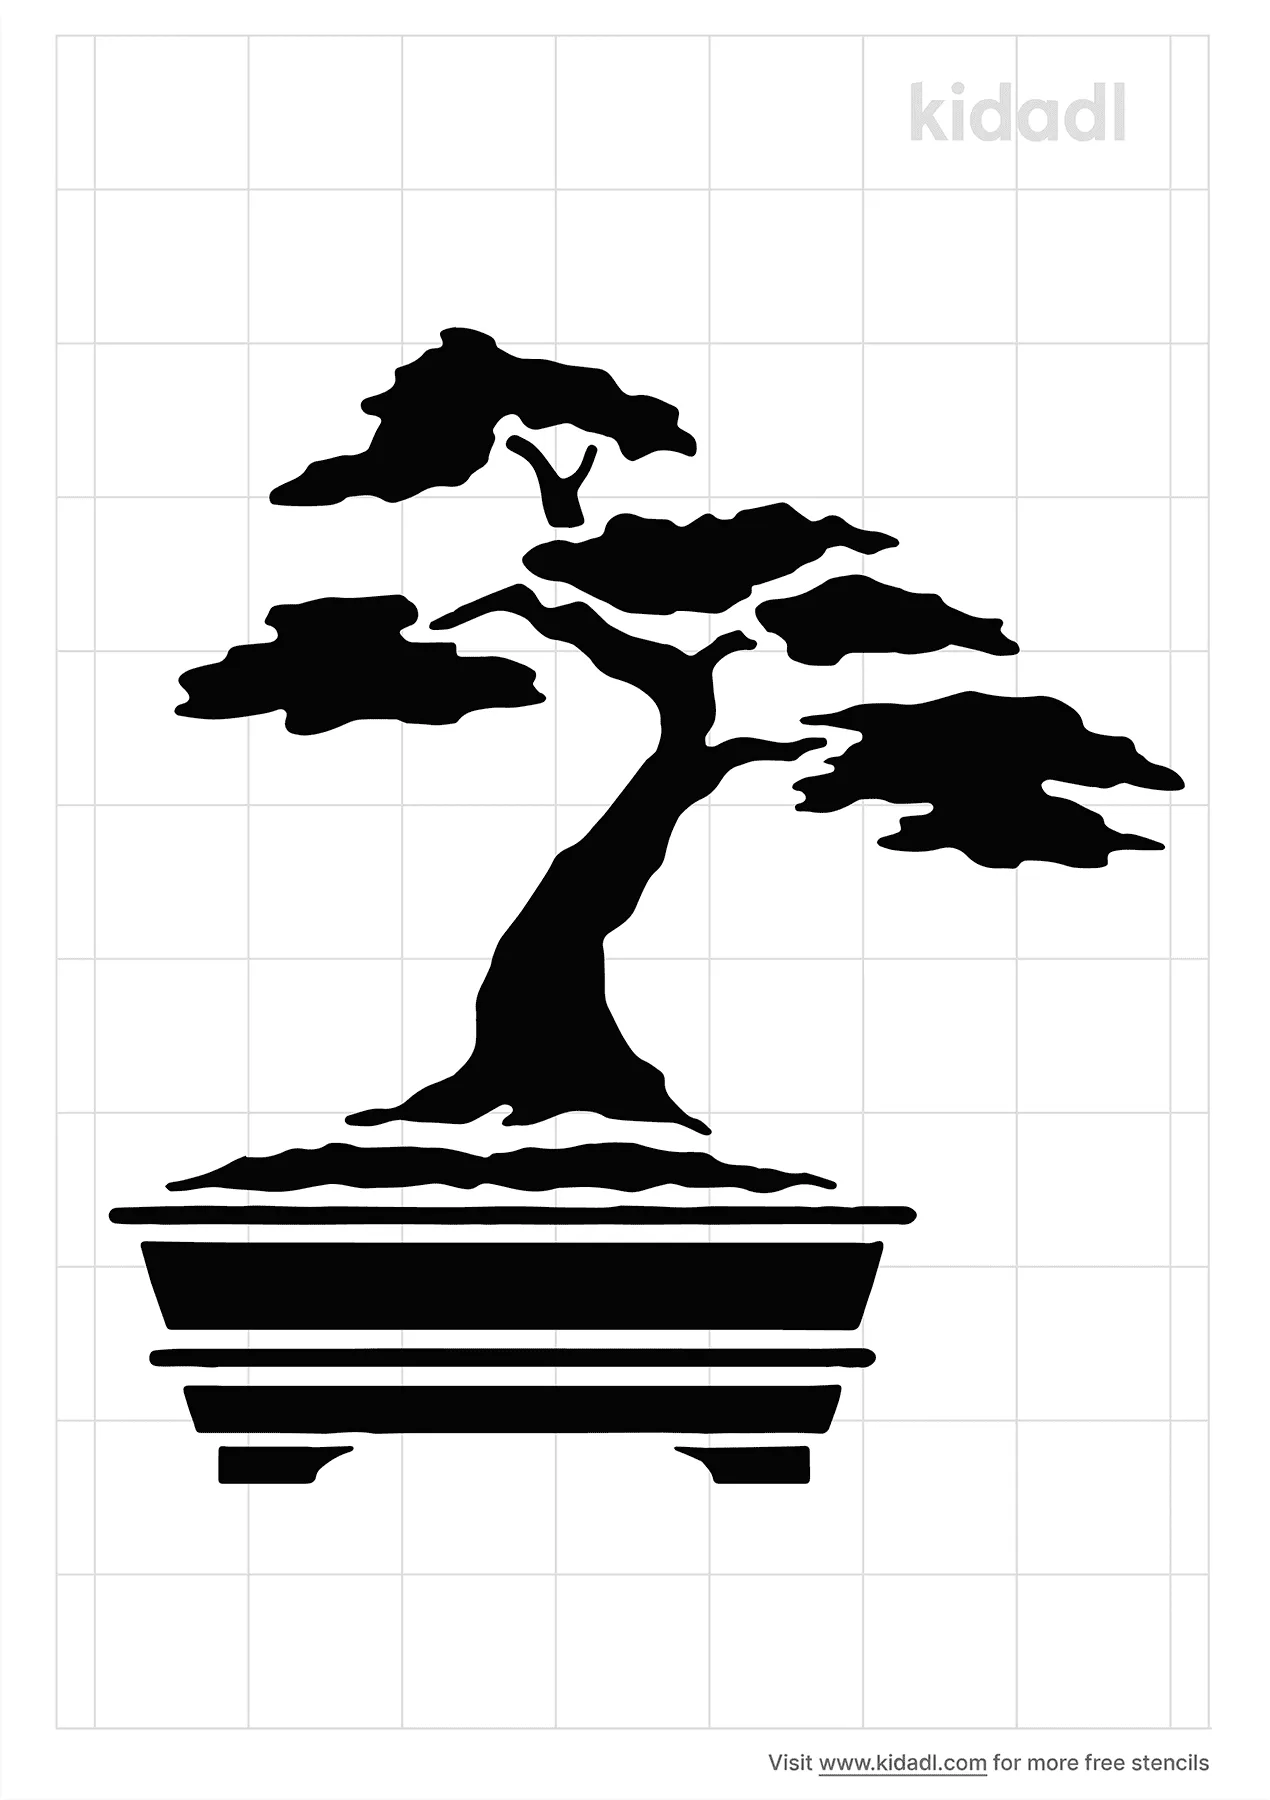 Chinese Tree Stencils Free Printable Plants Stencils Kidadl And Plants Stencils Free Printable Stencils Kidadl